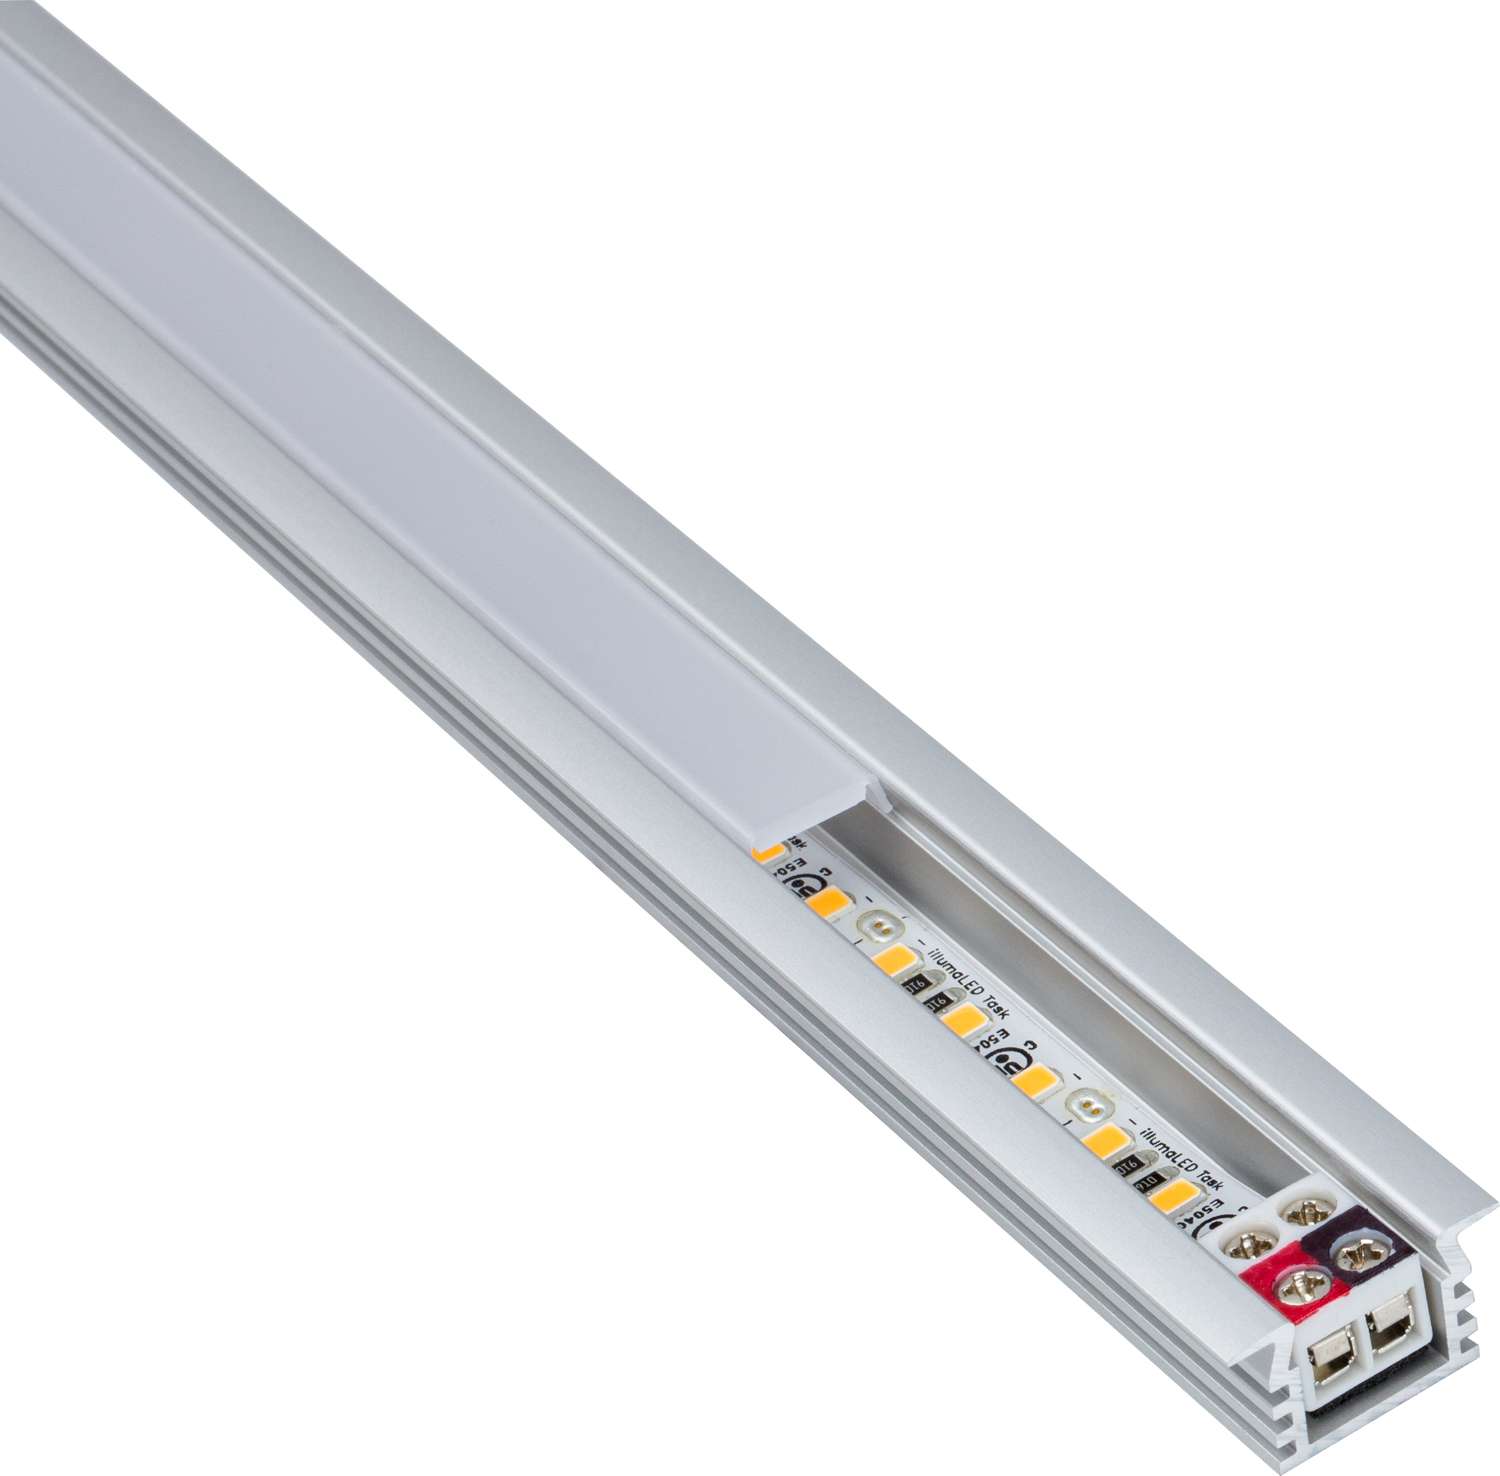 under cabinet lighting not hardwired Task Lighting Linear Fixtures;Single-white Lighting Aluminum